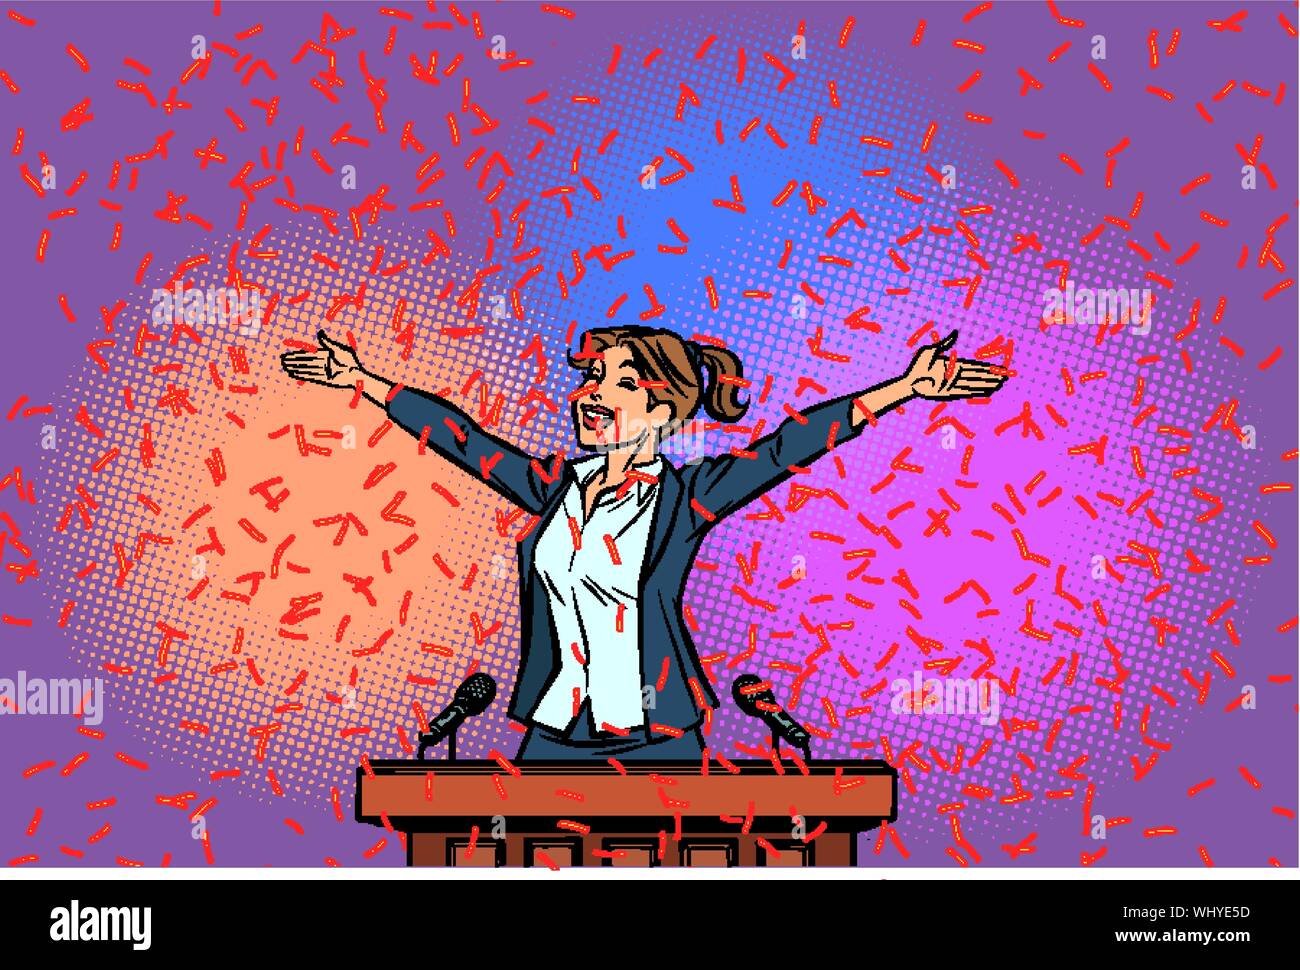 Donne vincitore politico trionfo sul podio. Fumetto cartoon arte pop retrò illustrazione del disegno a mano Illustrazione Vettoriale